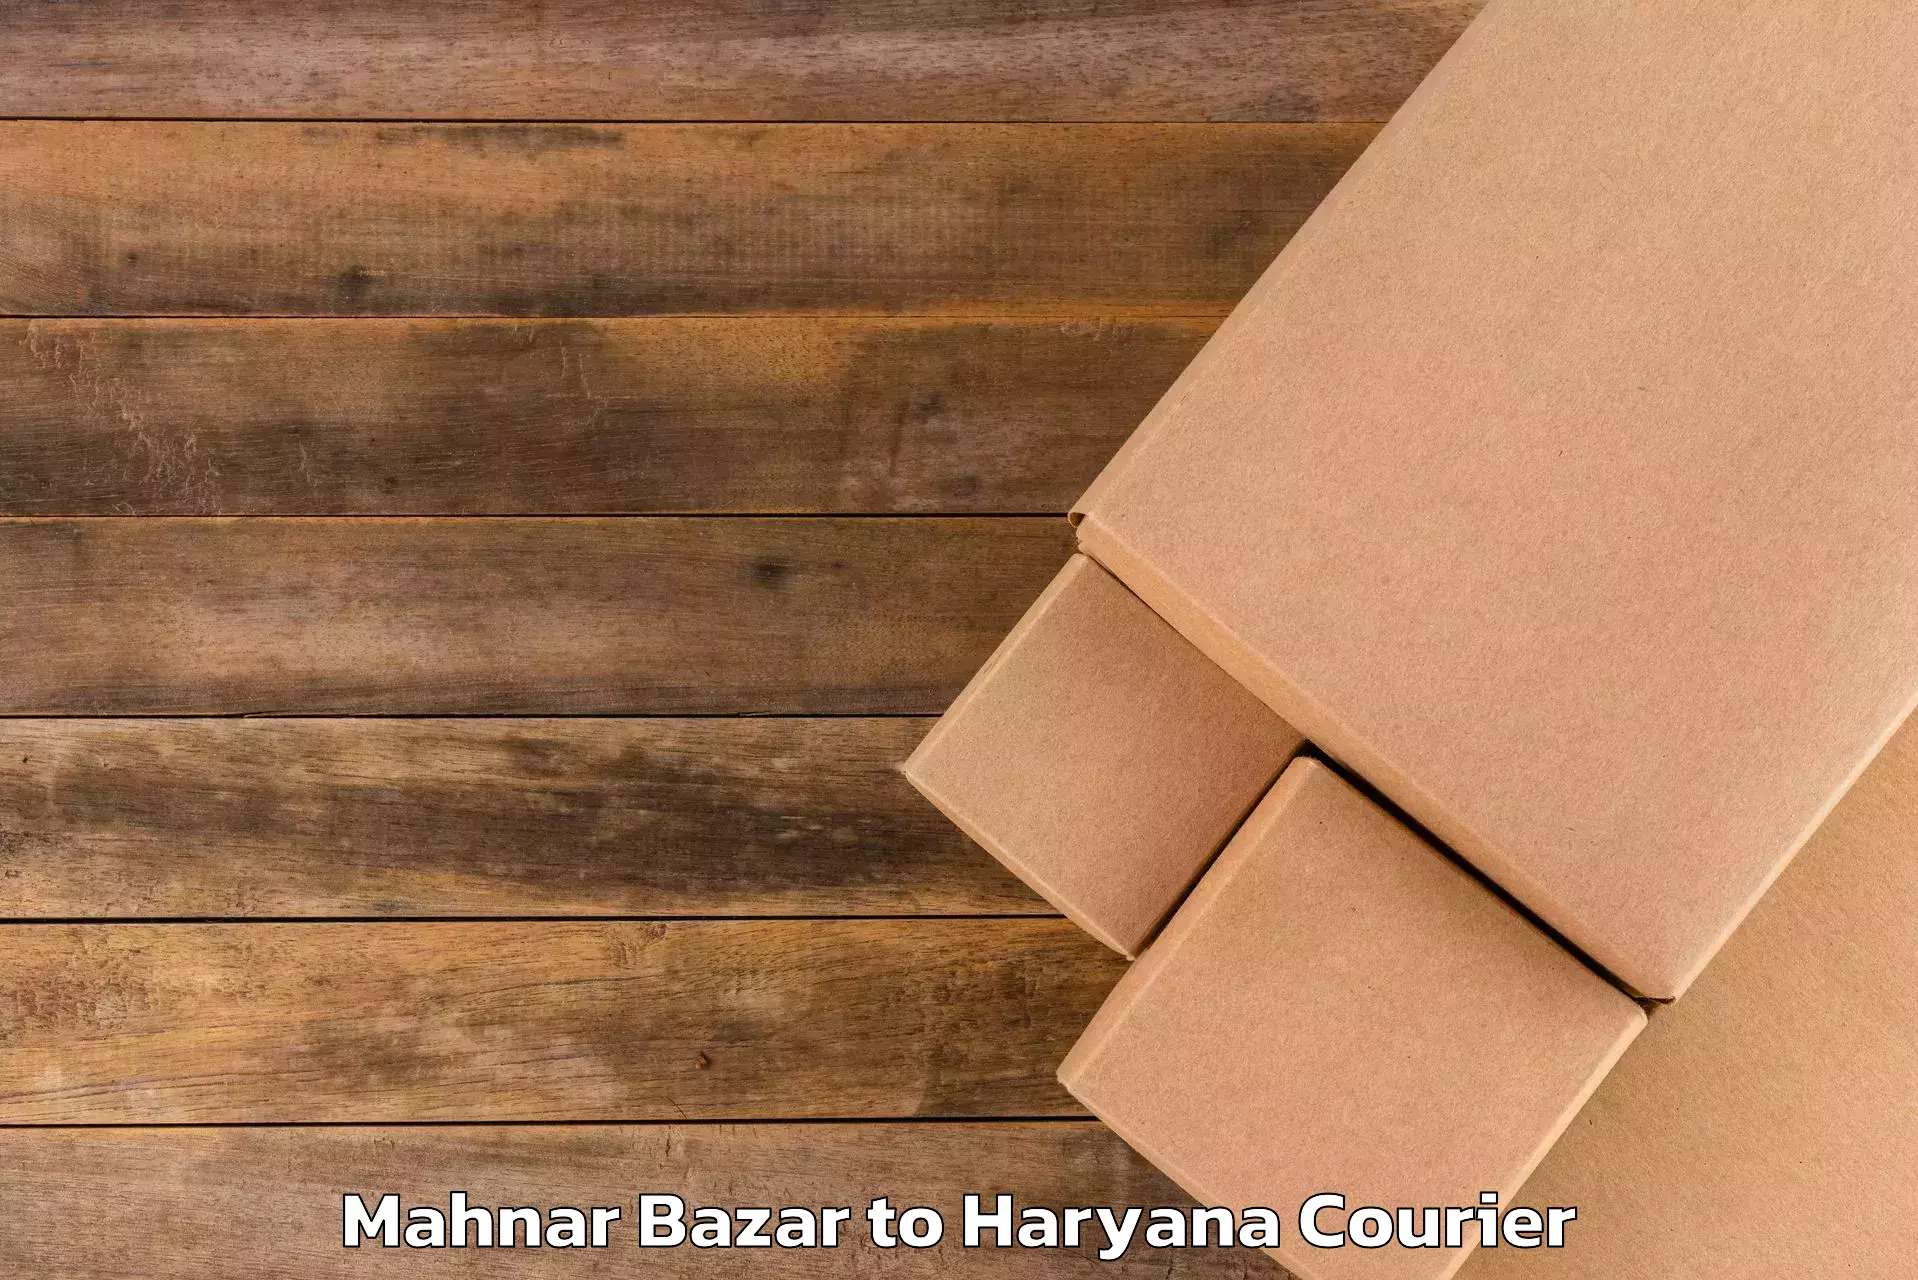 Round trip baggage courier in Mahnar Bazar to Bilaspur Haryana